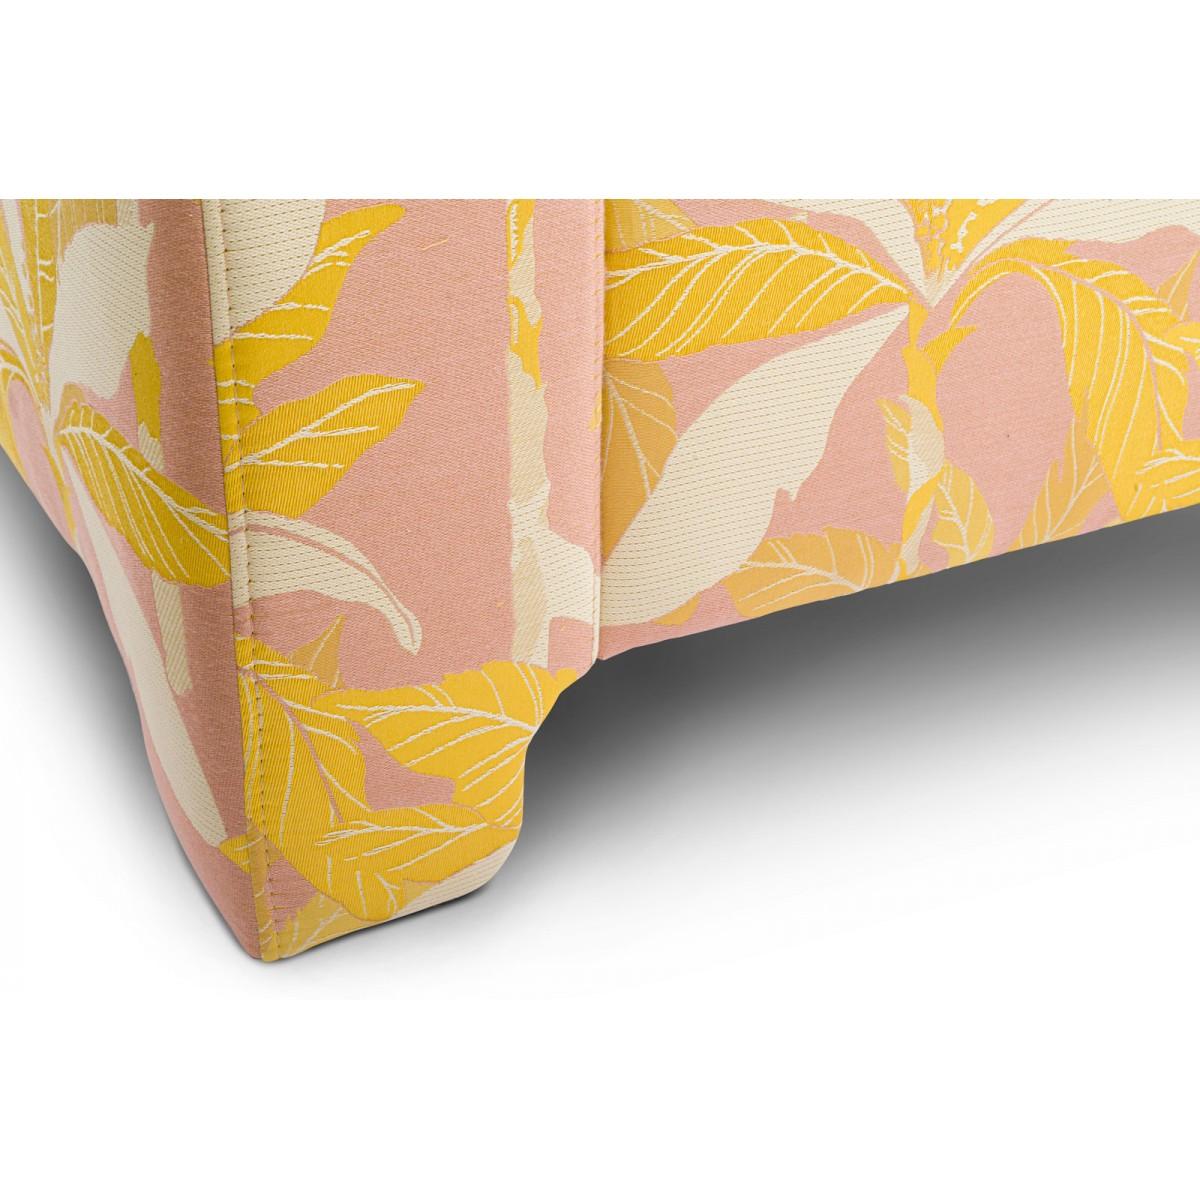 Popus Editions Graziella 3 Seater Sofa in Pink Miami Jacquard Fabric For Sale 3